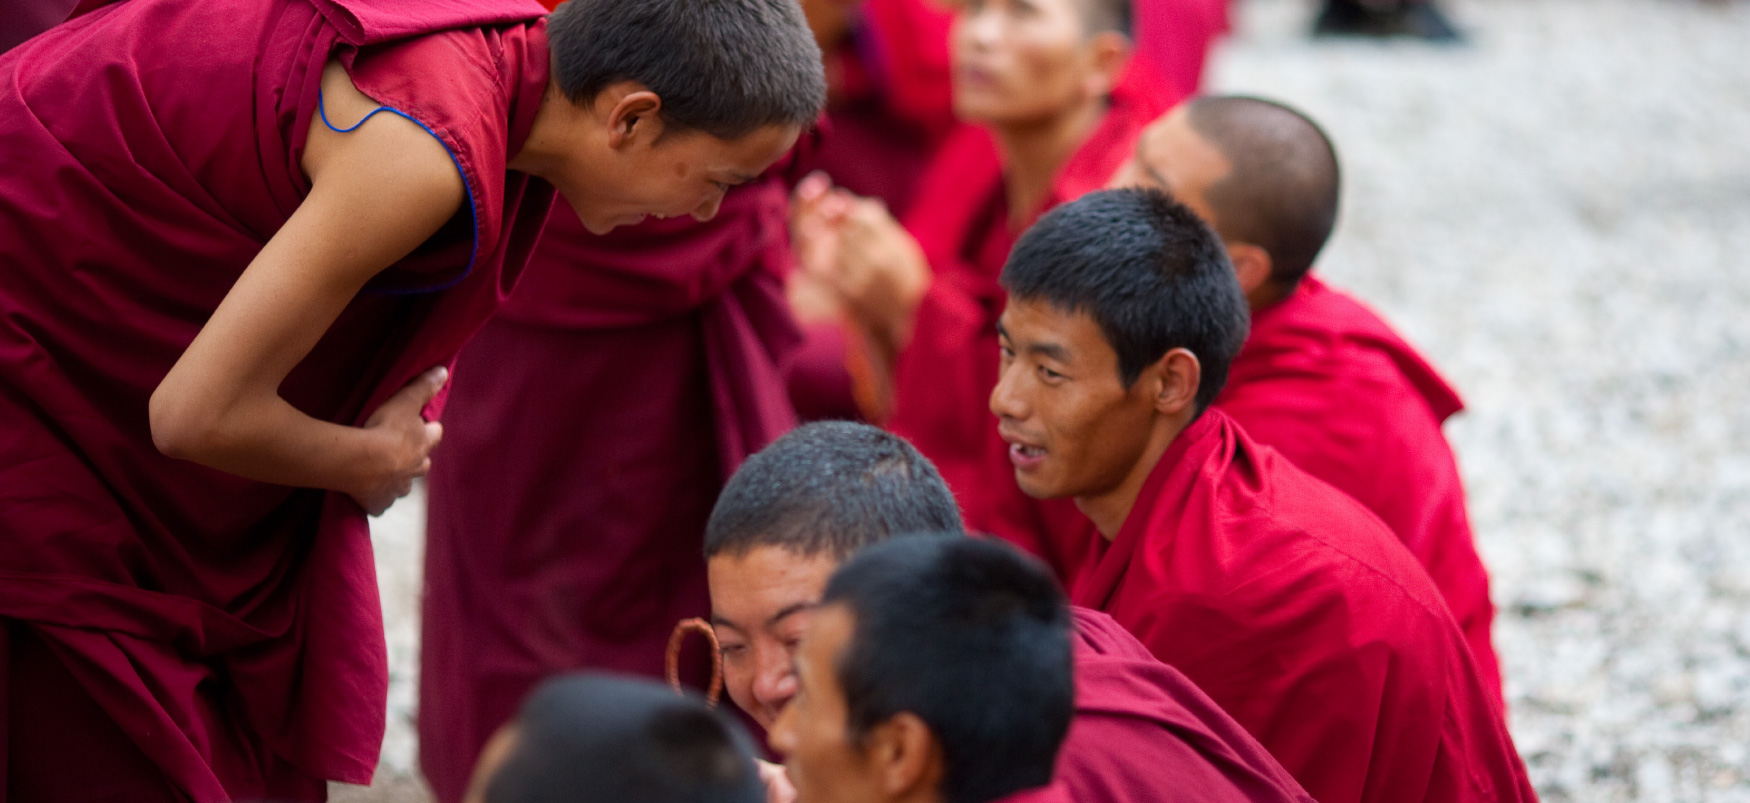 Буддійський чернець в червоному одязі нахиляється говорити з іншими ченцями в червоному одязі.